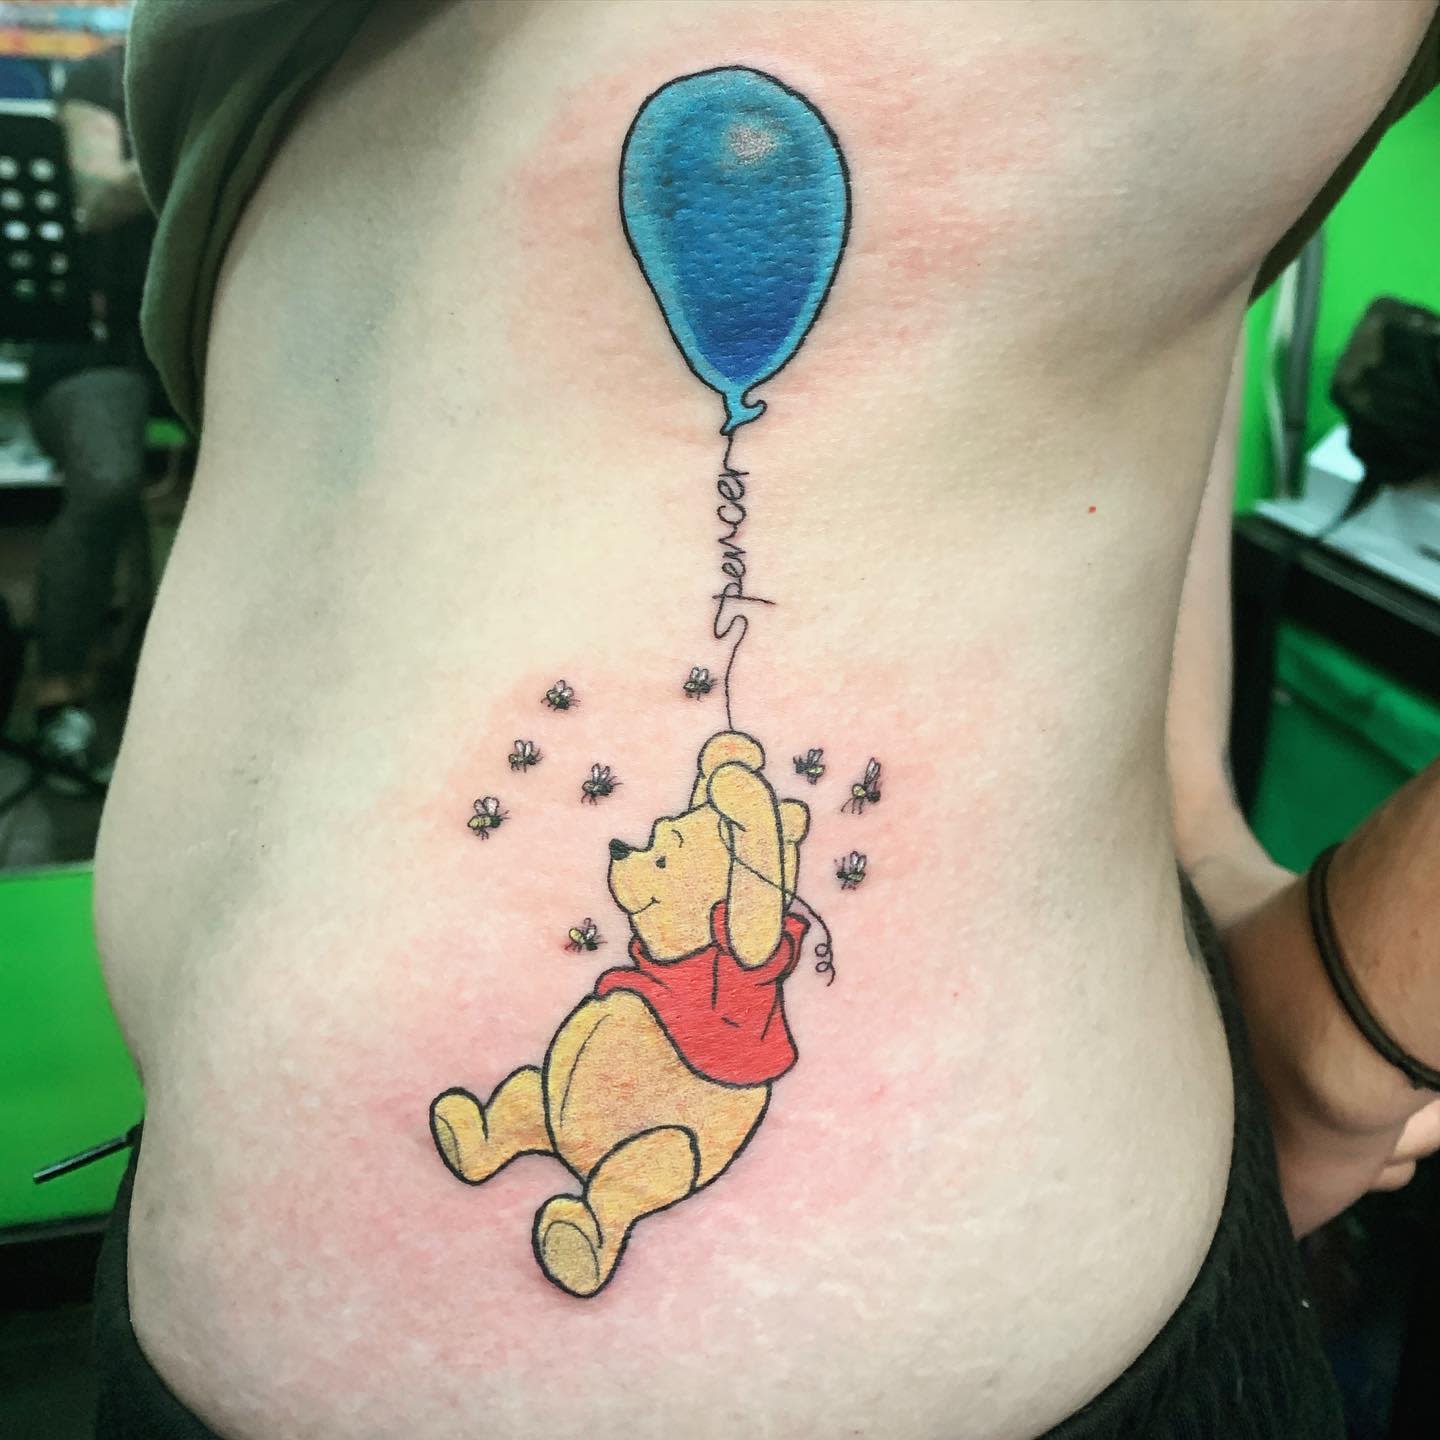 Balloon Winnie the Pooh Tattoo -jackattack101